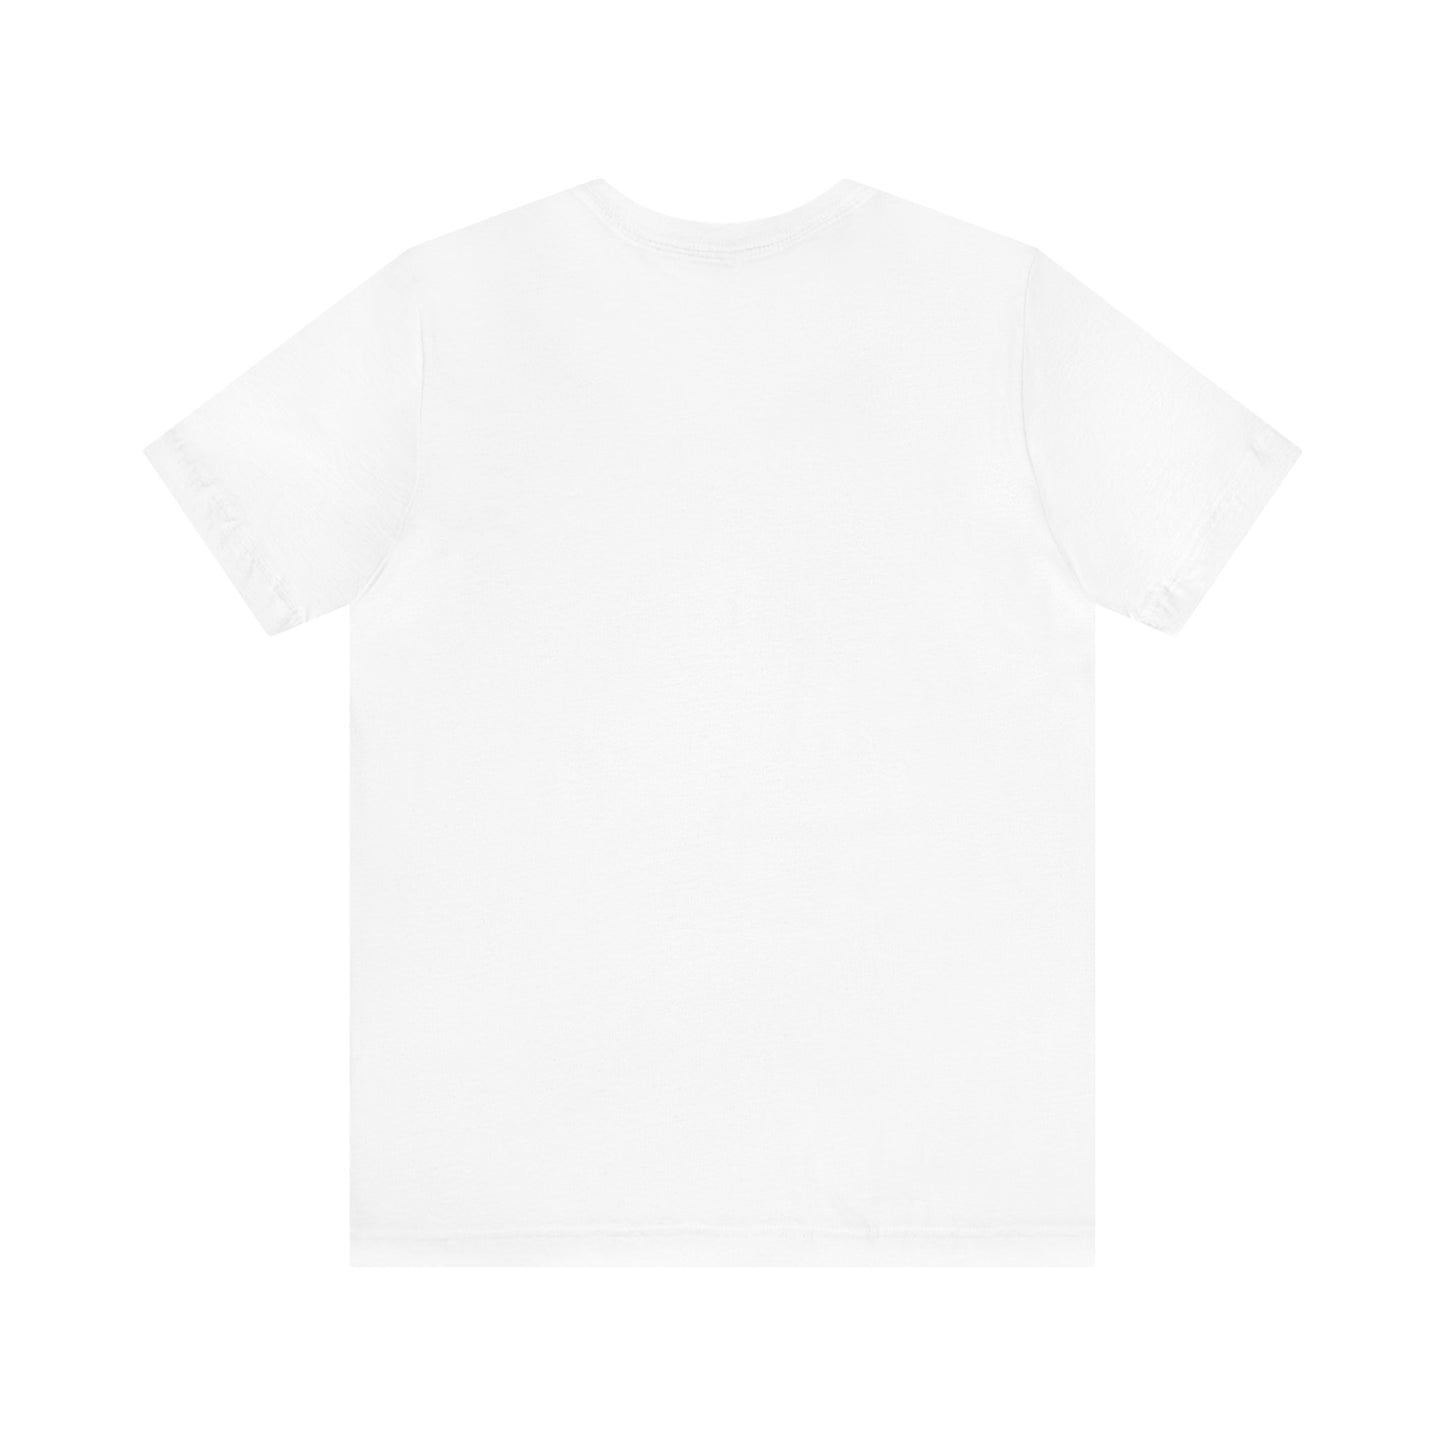 Sham Rock - Jersey Short Sleeve T-Shirt